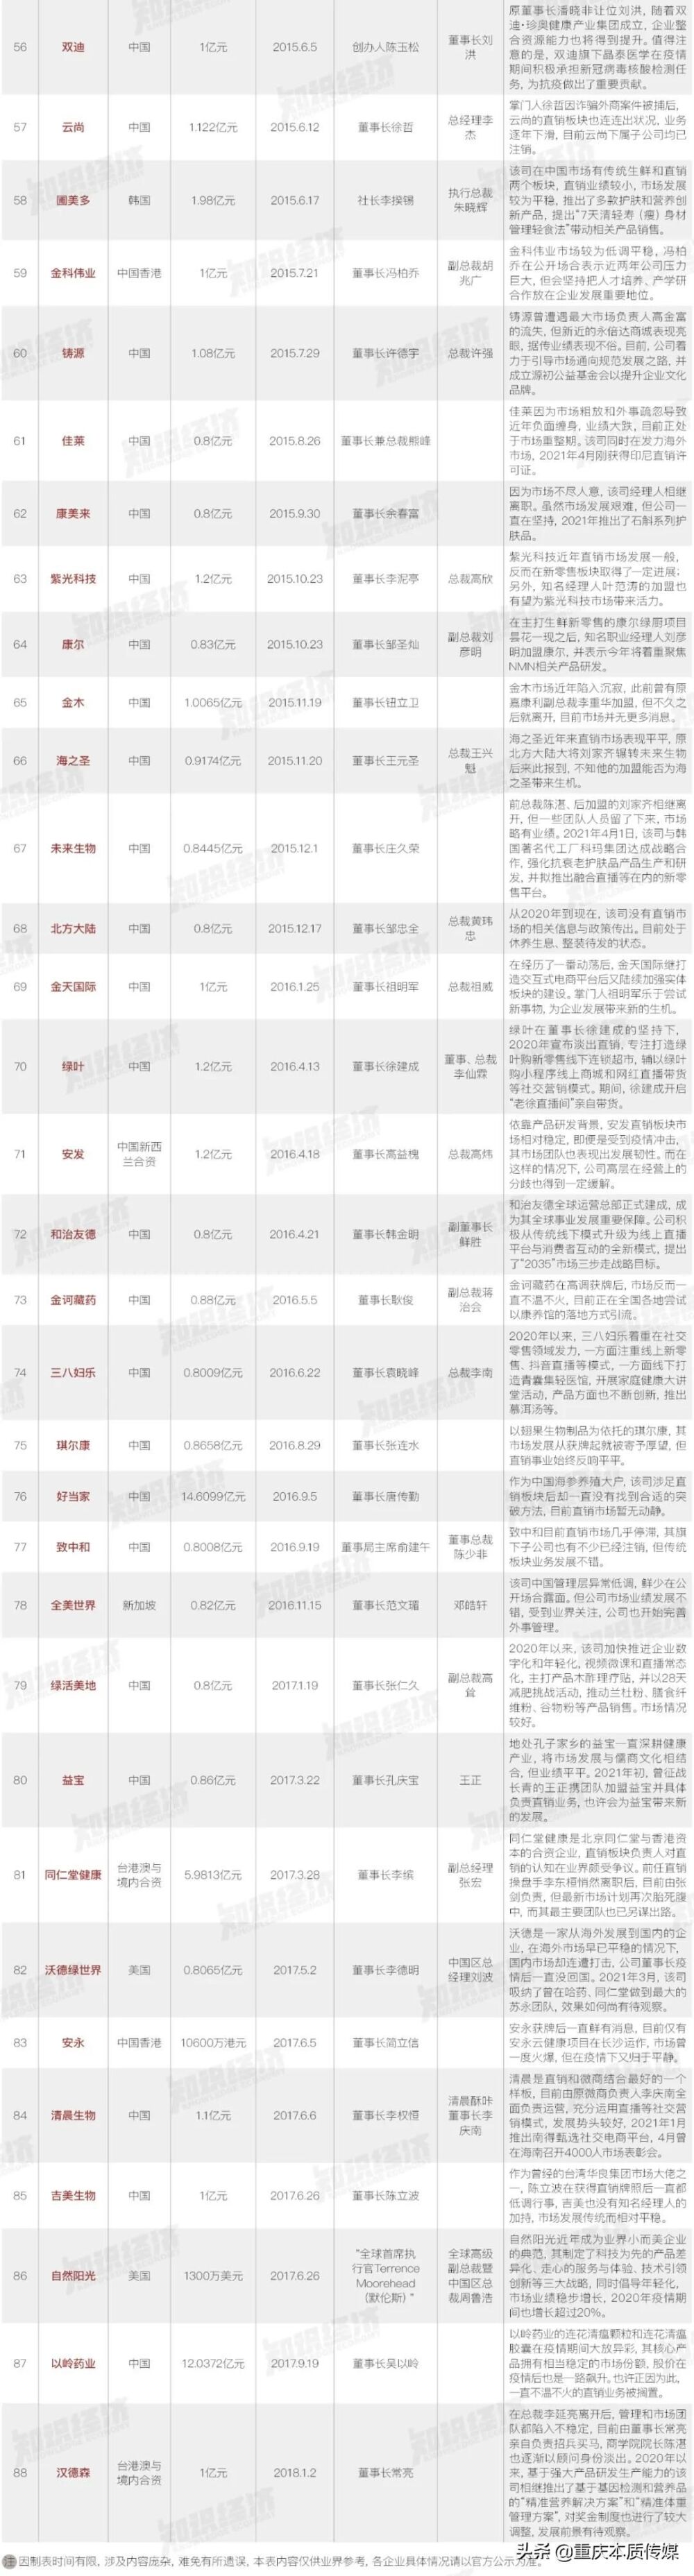 独家｜中国88家直销企业沉浮录